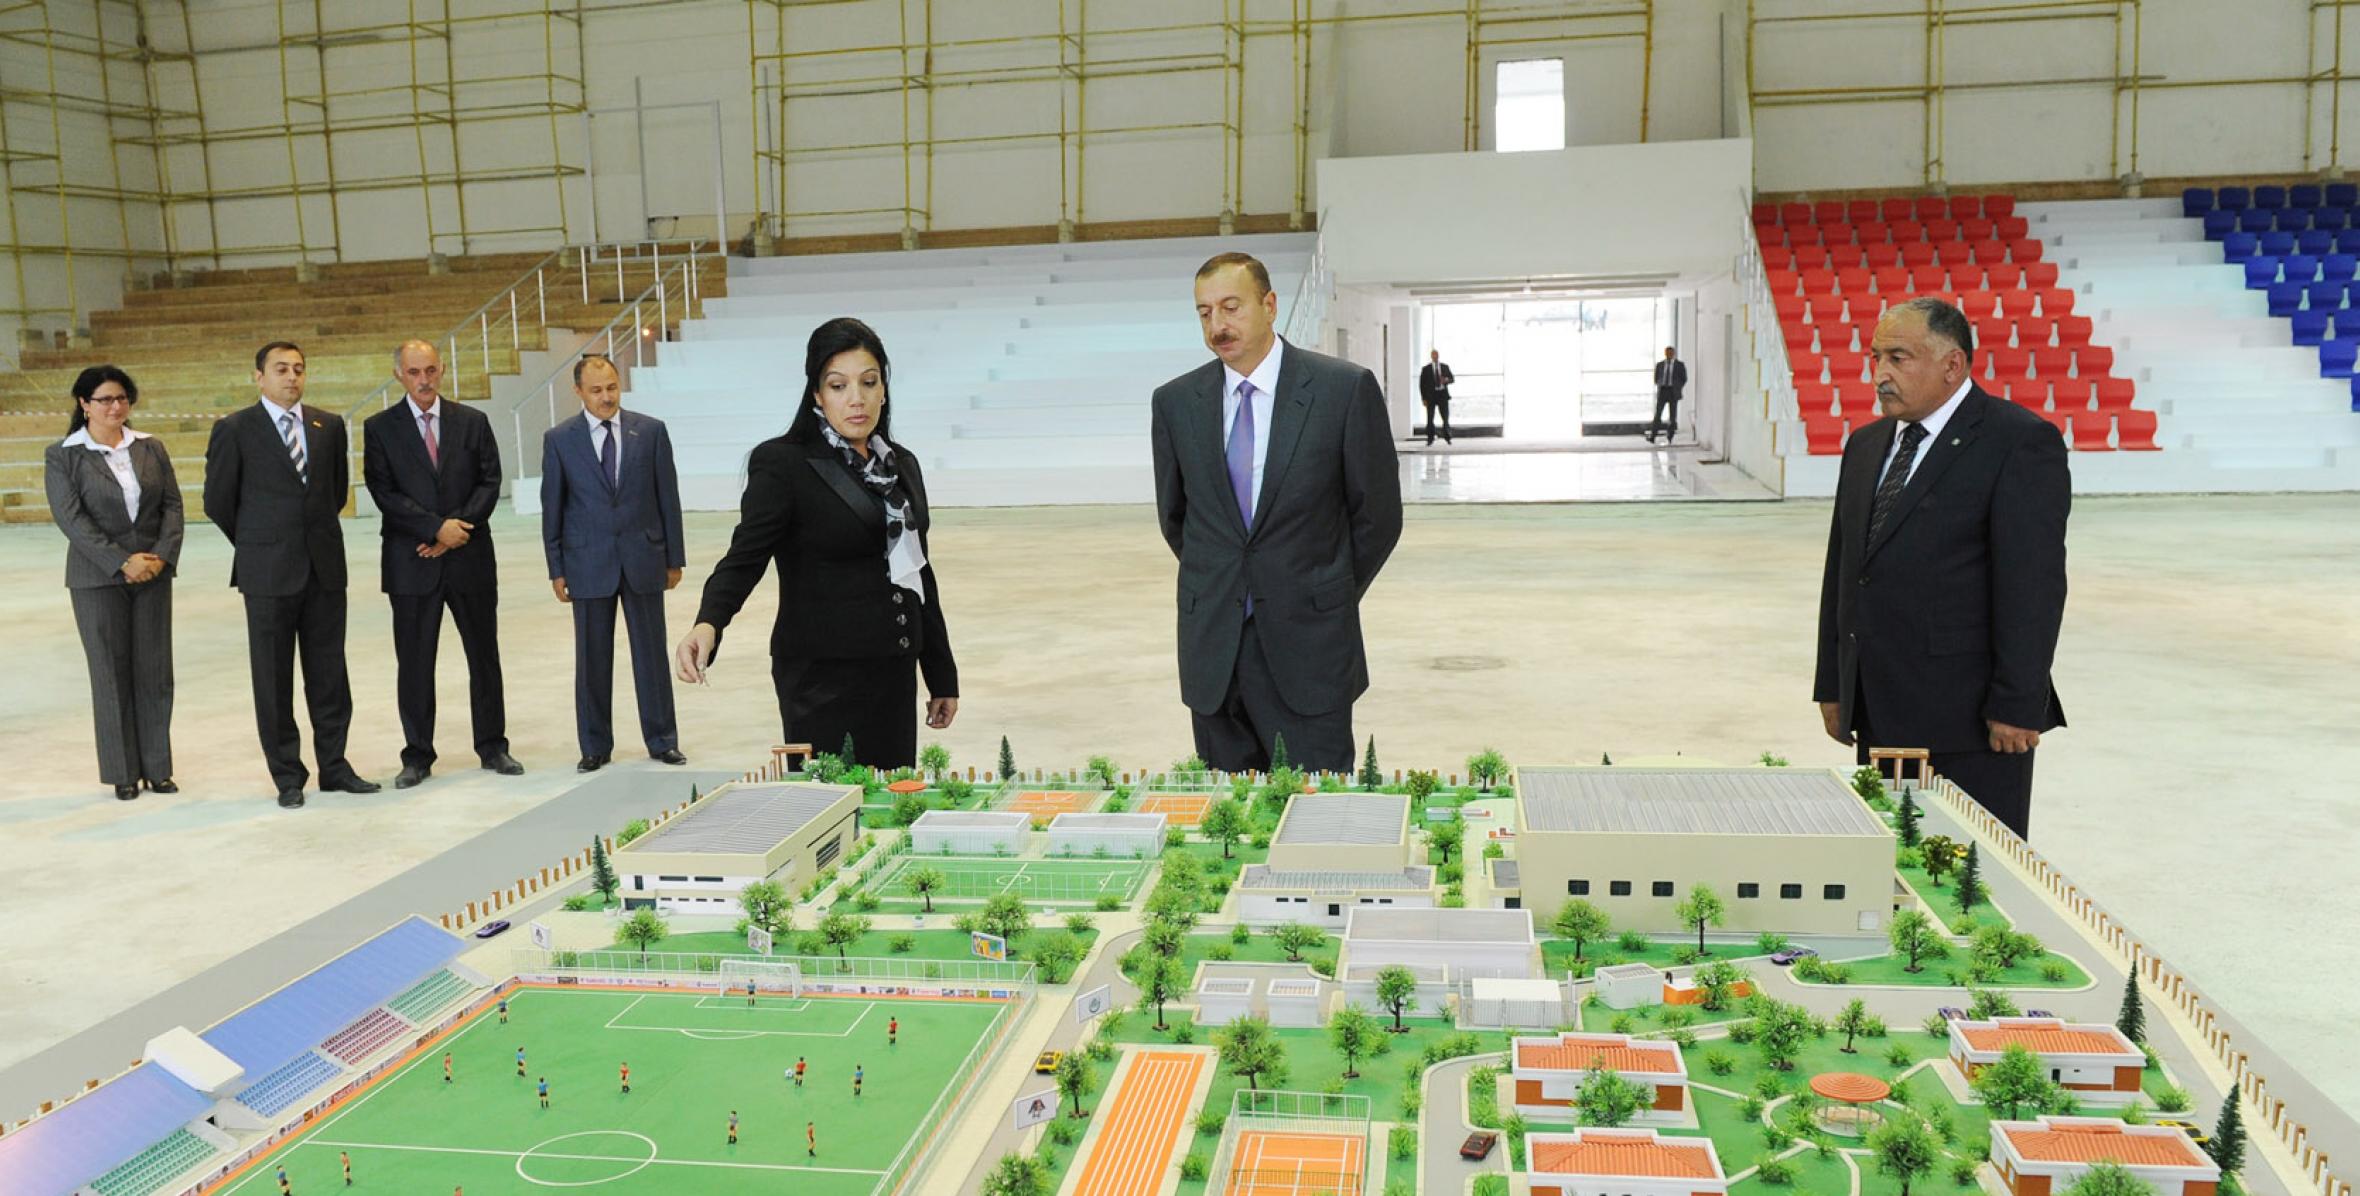 Ильхам Алиев ознакомился с работами по реконструкции, проводимыми в Олимпийском спортивном комплексе в Шамахе